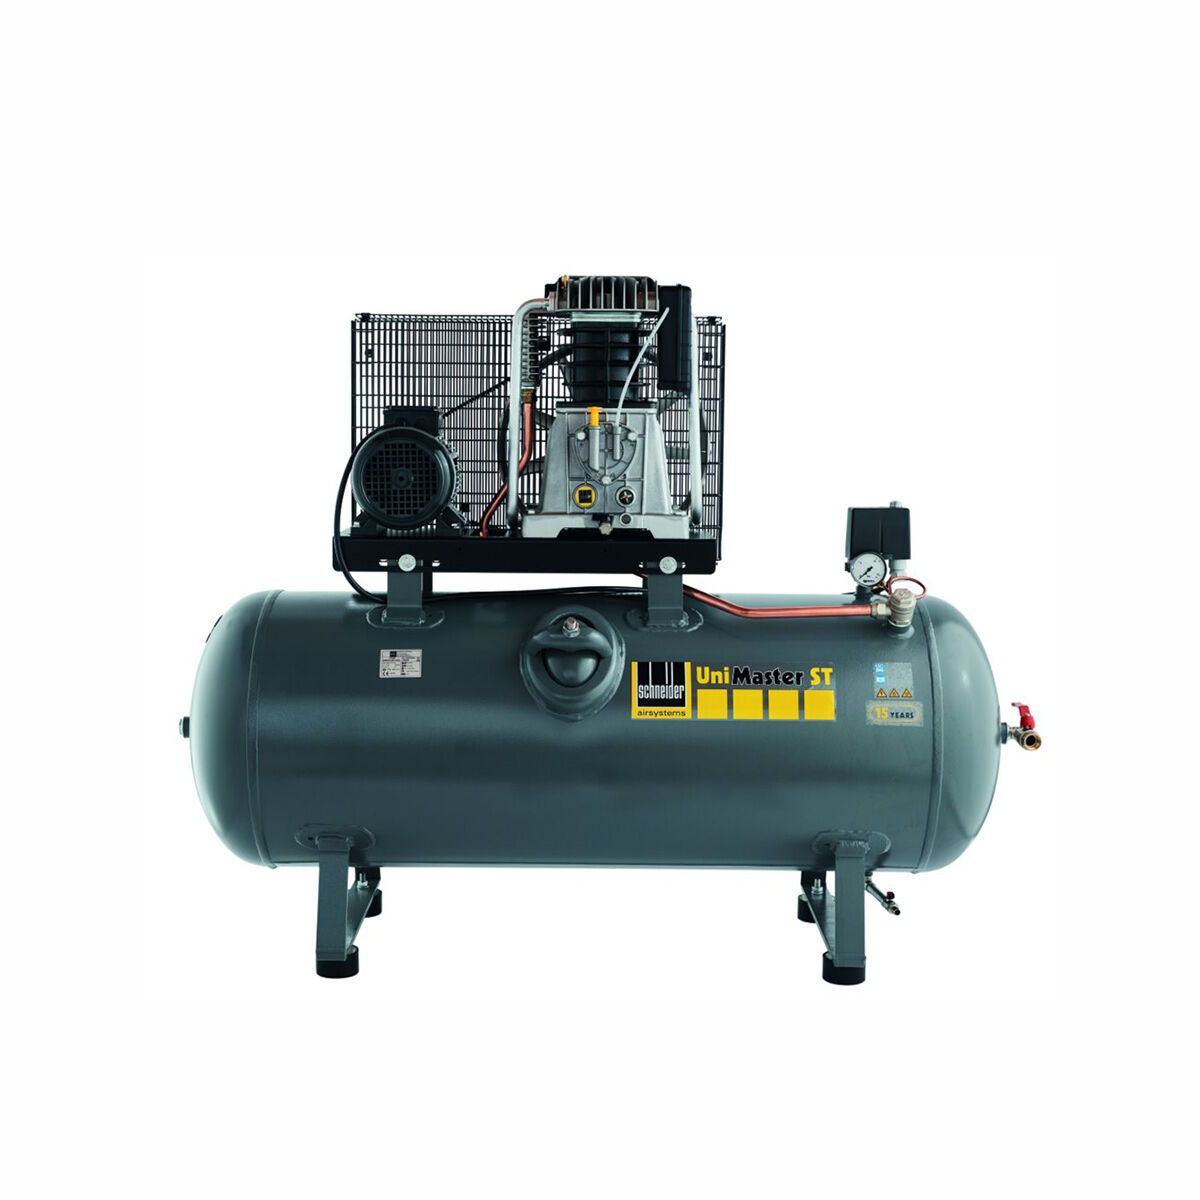 Schneider-Kompressor UNM STL 1000-10-270 1121570215